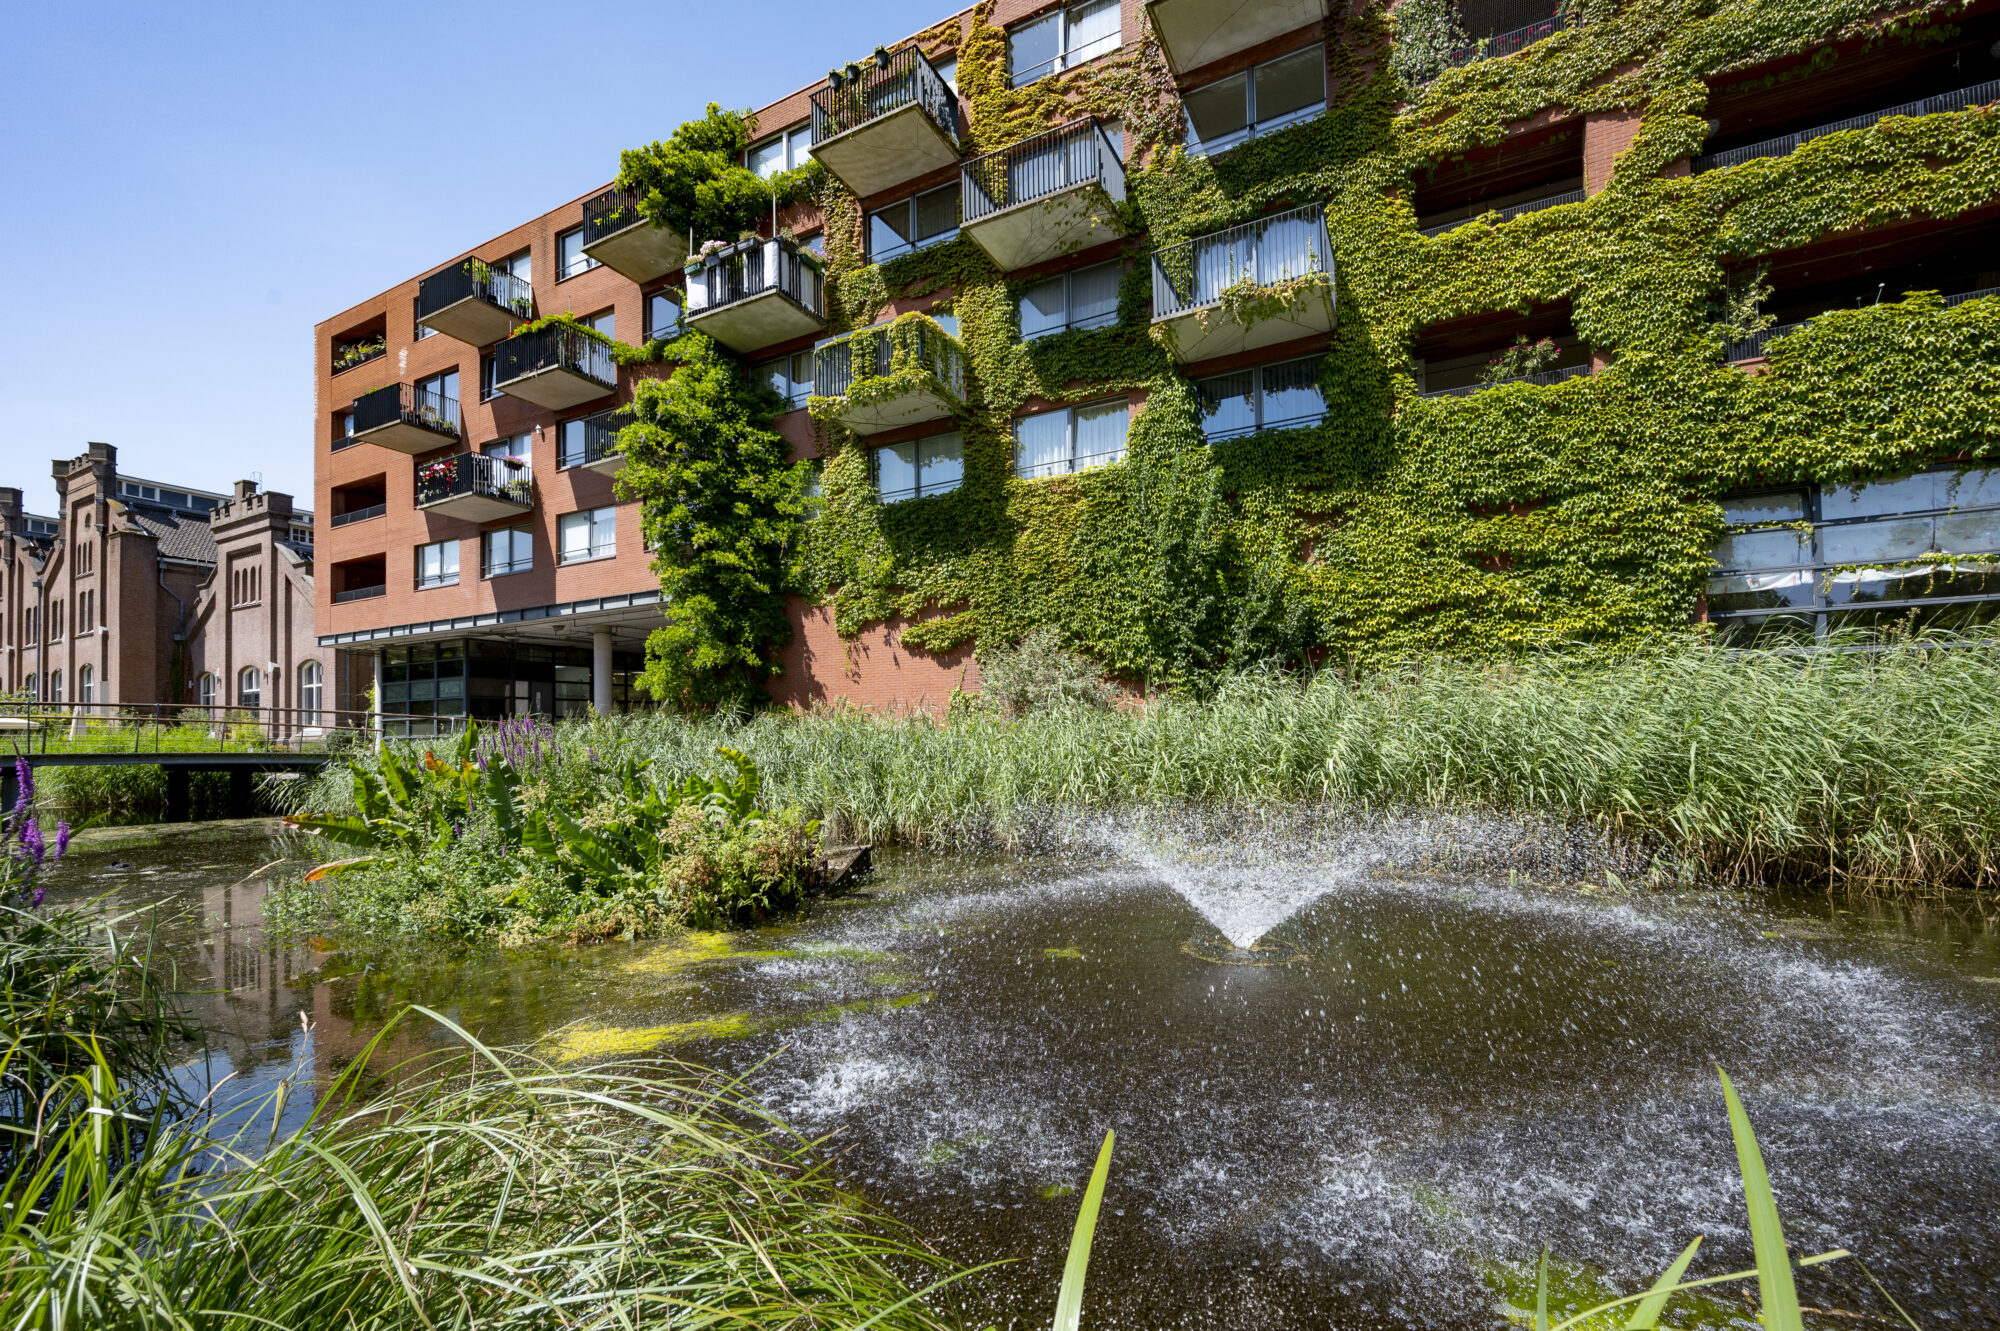 Gebouw in Leiden met groene platen op de buitenkant voor de klimaatadaptatie.